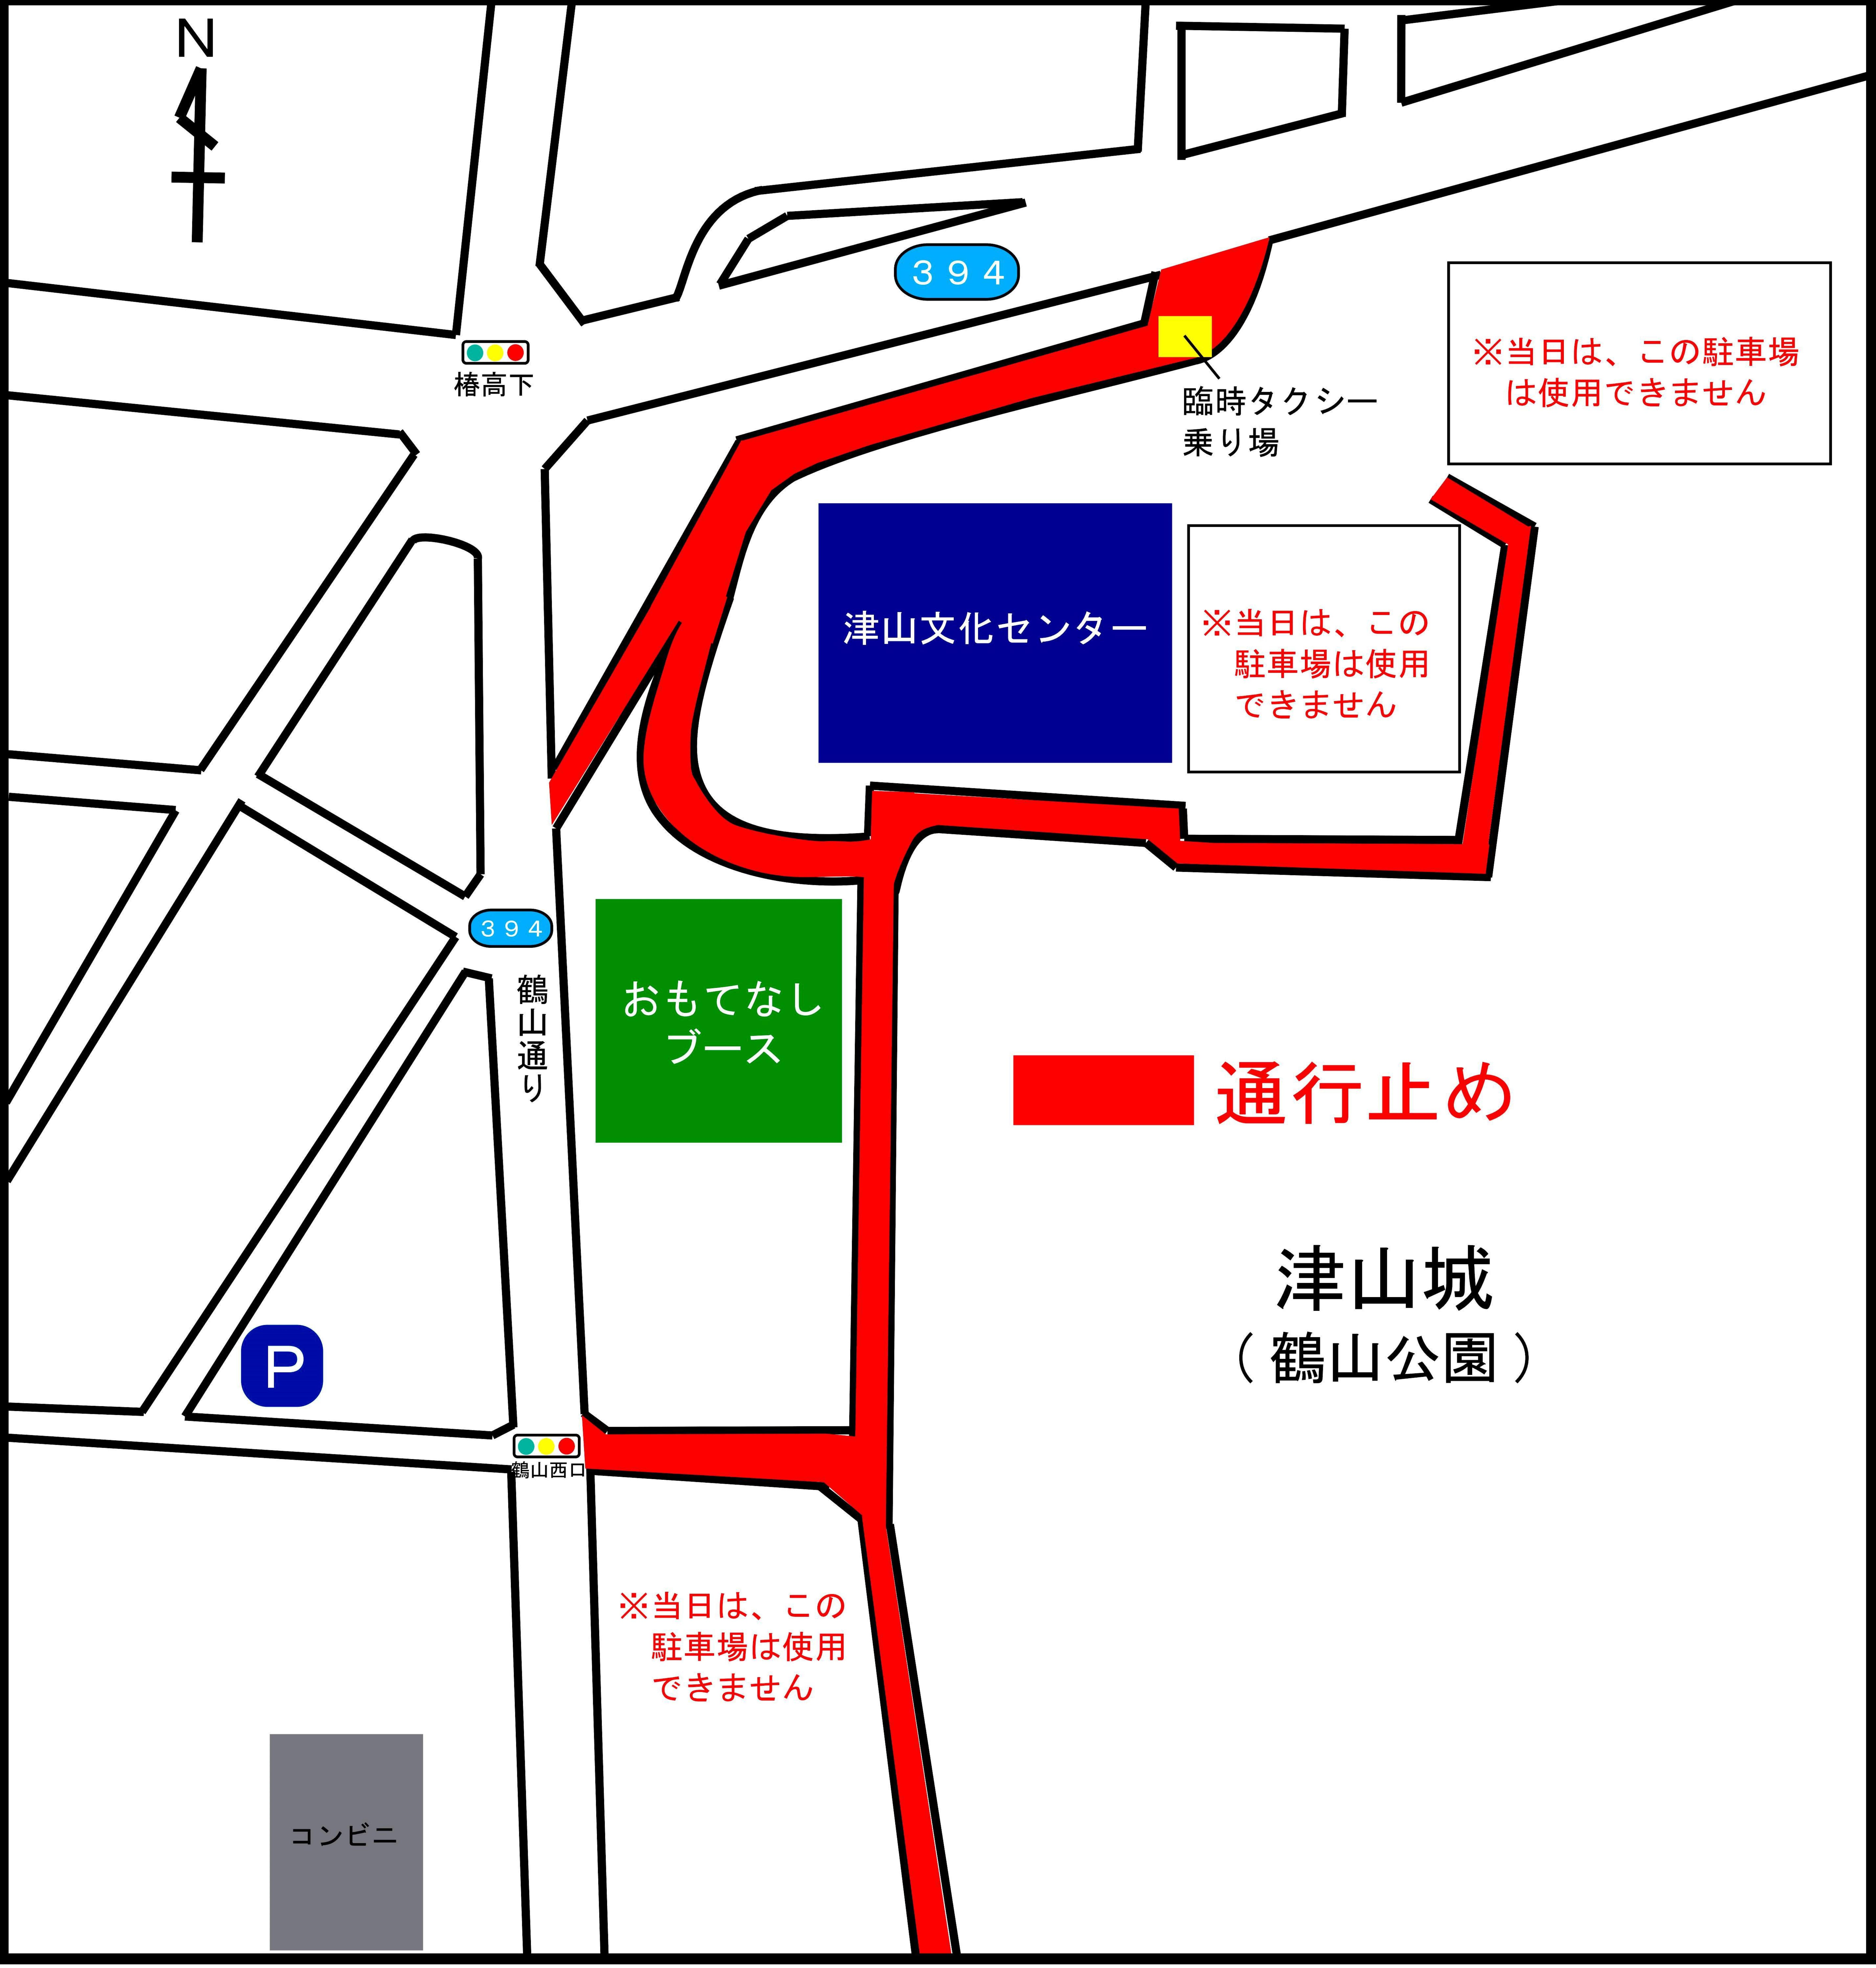 7月22日(土)は津山文化センター駐車場は使用できません。